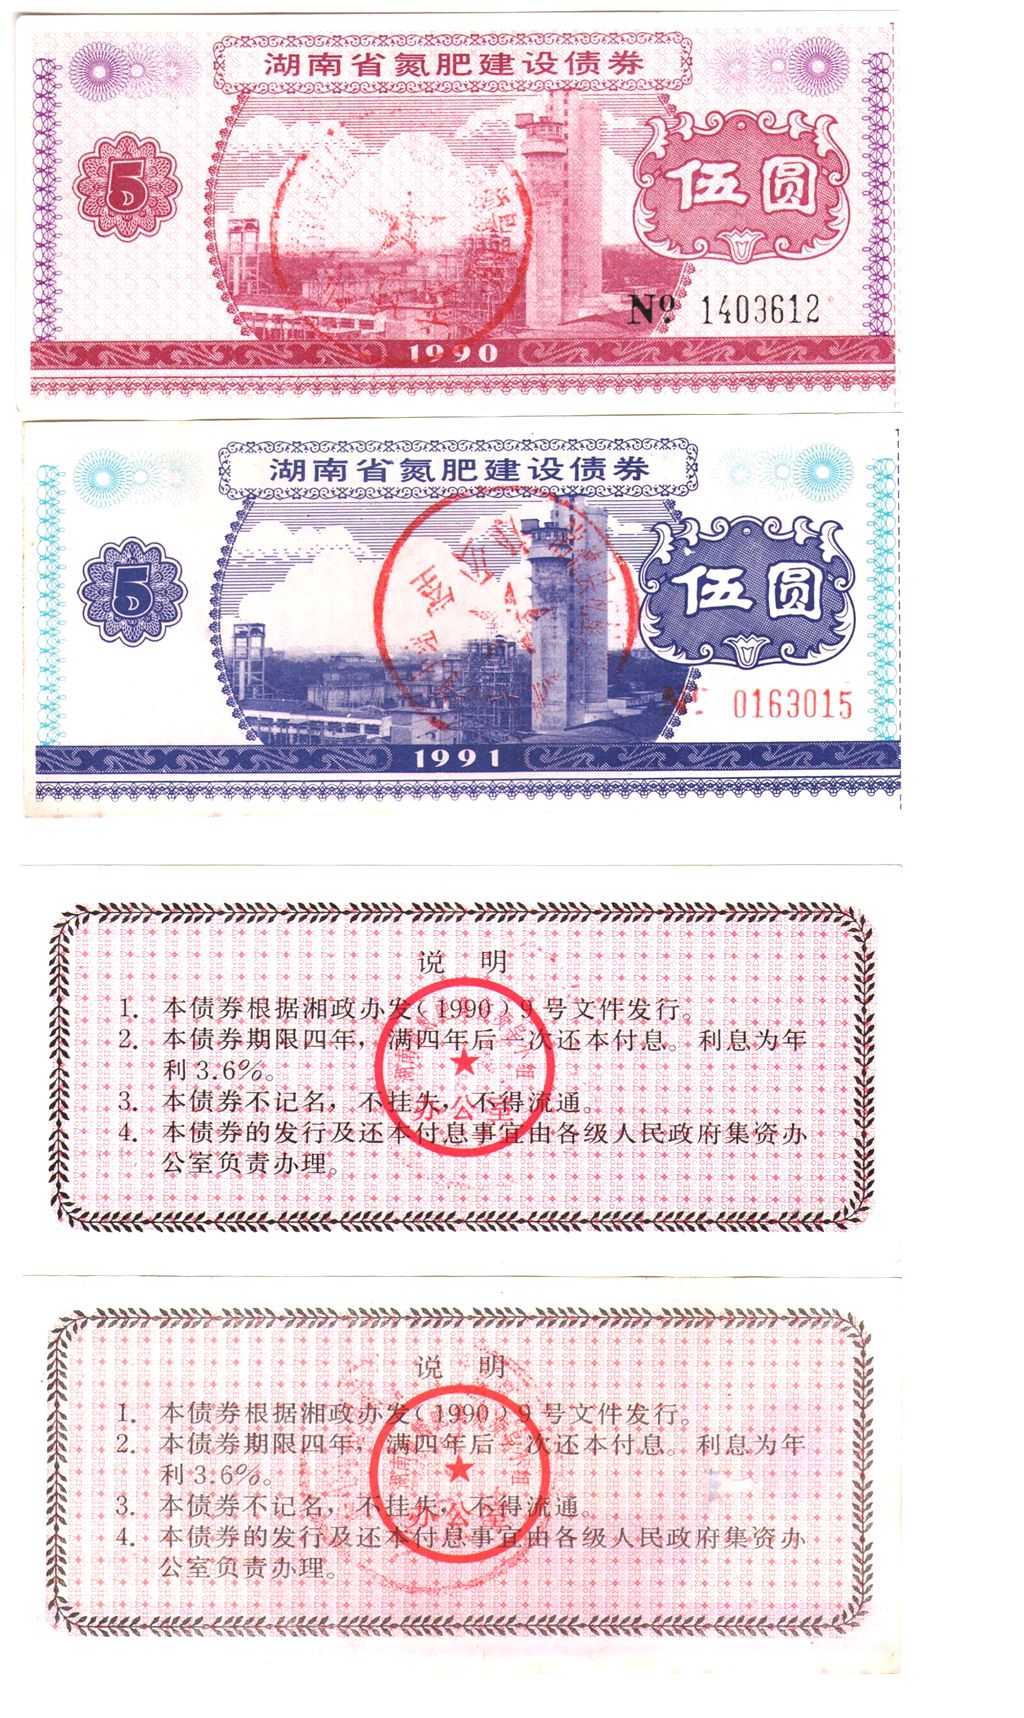 B8089, China Hunan Province 3.6% Bond, 2 pcs, 4 Years, 1991